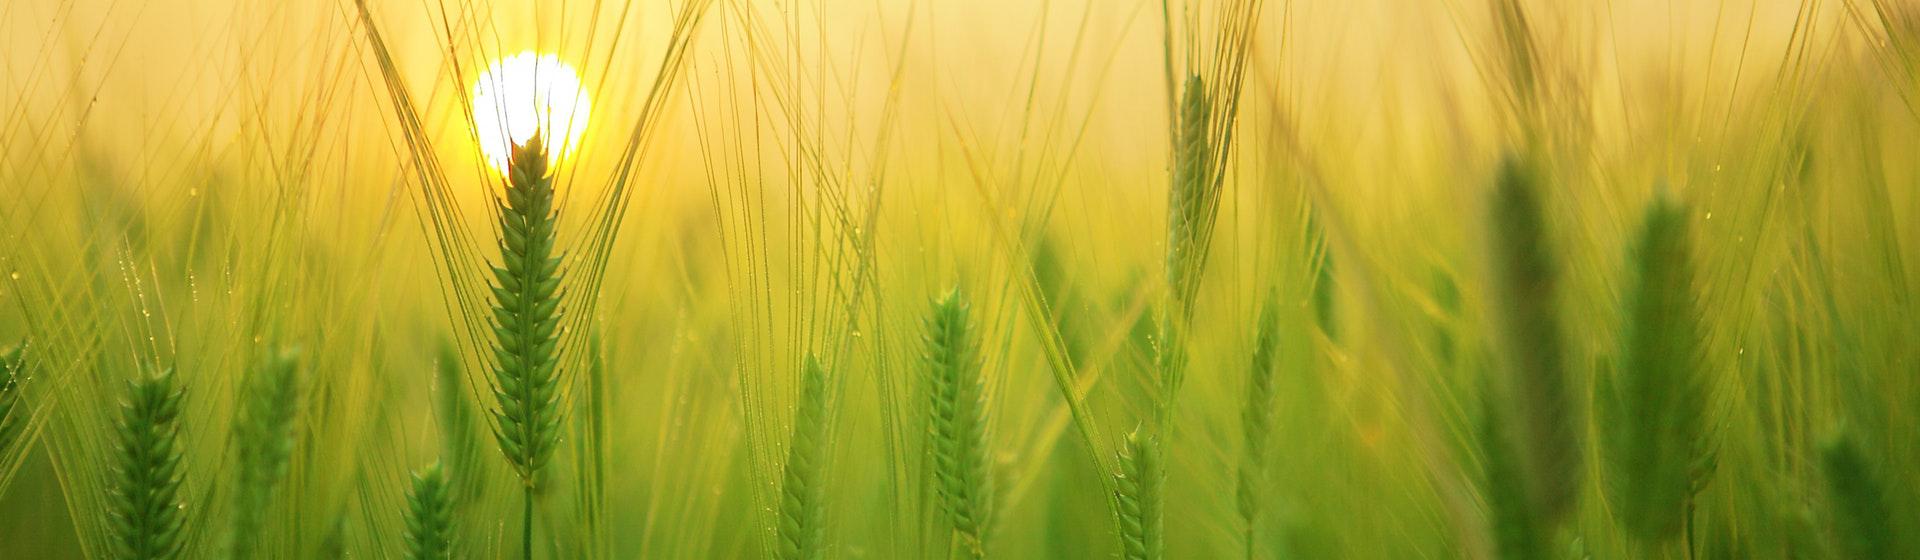 El trigo blando y la cebada